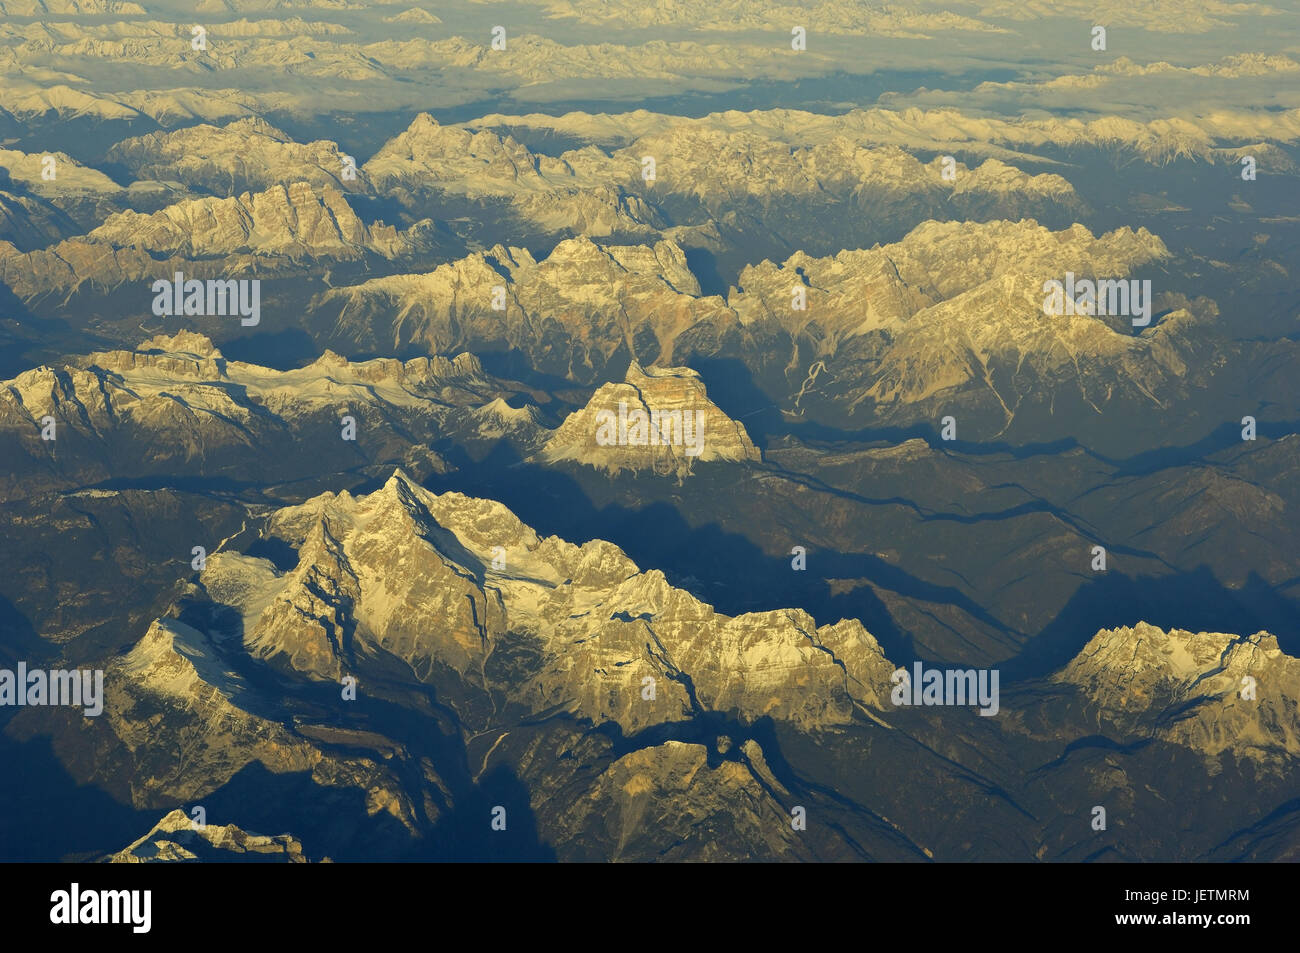 Le Dolomiti da Bird's-eye, Dolomiten aus der Vogelperspektive Foto Stock